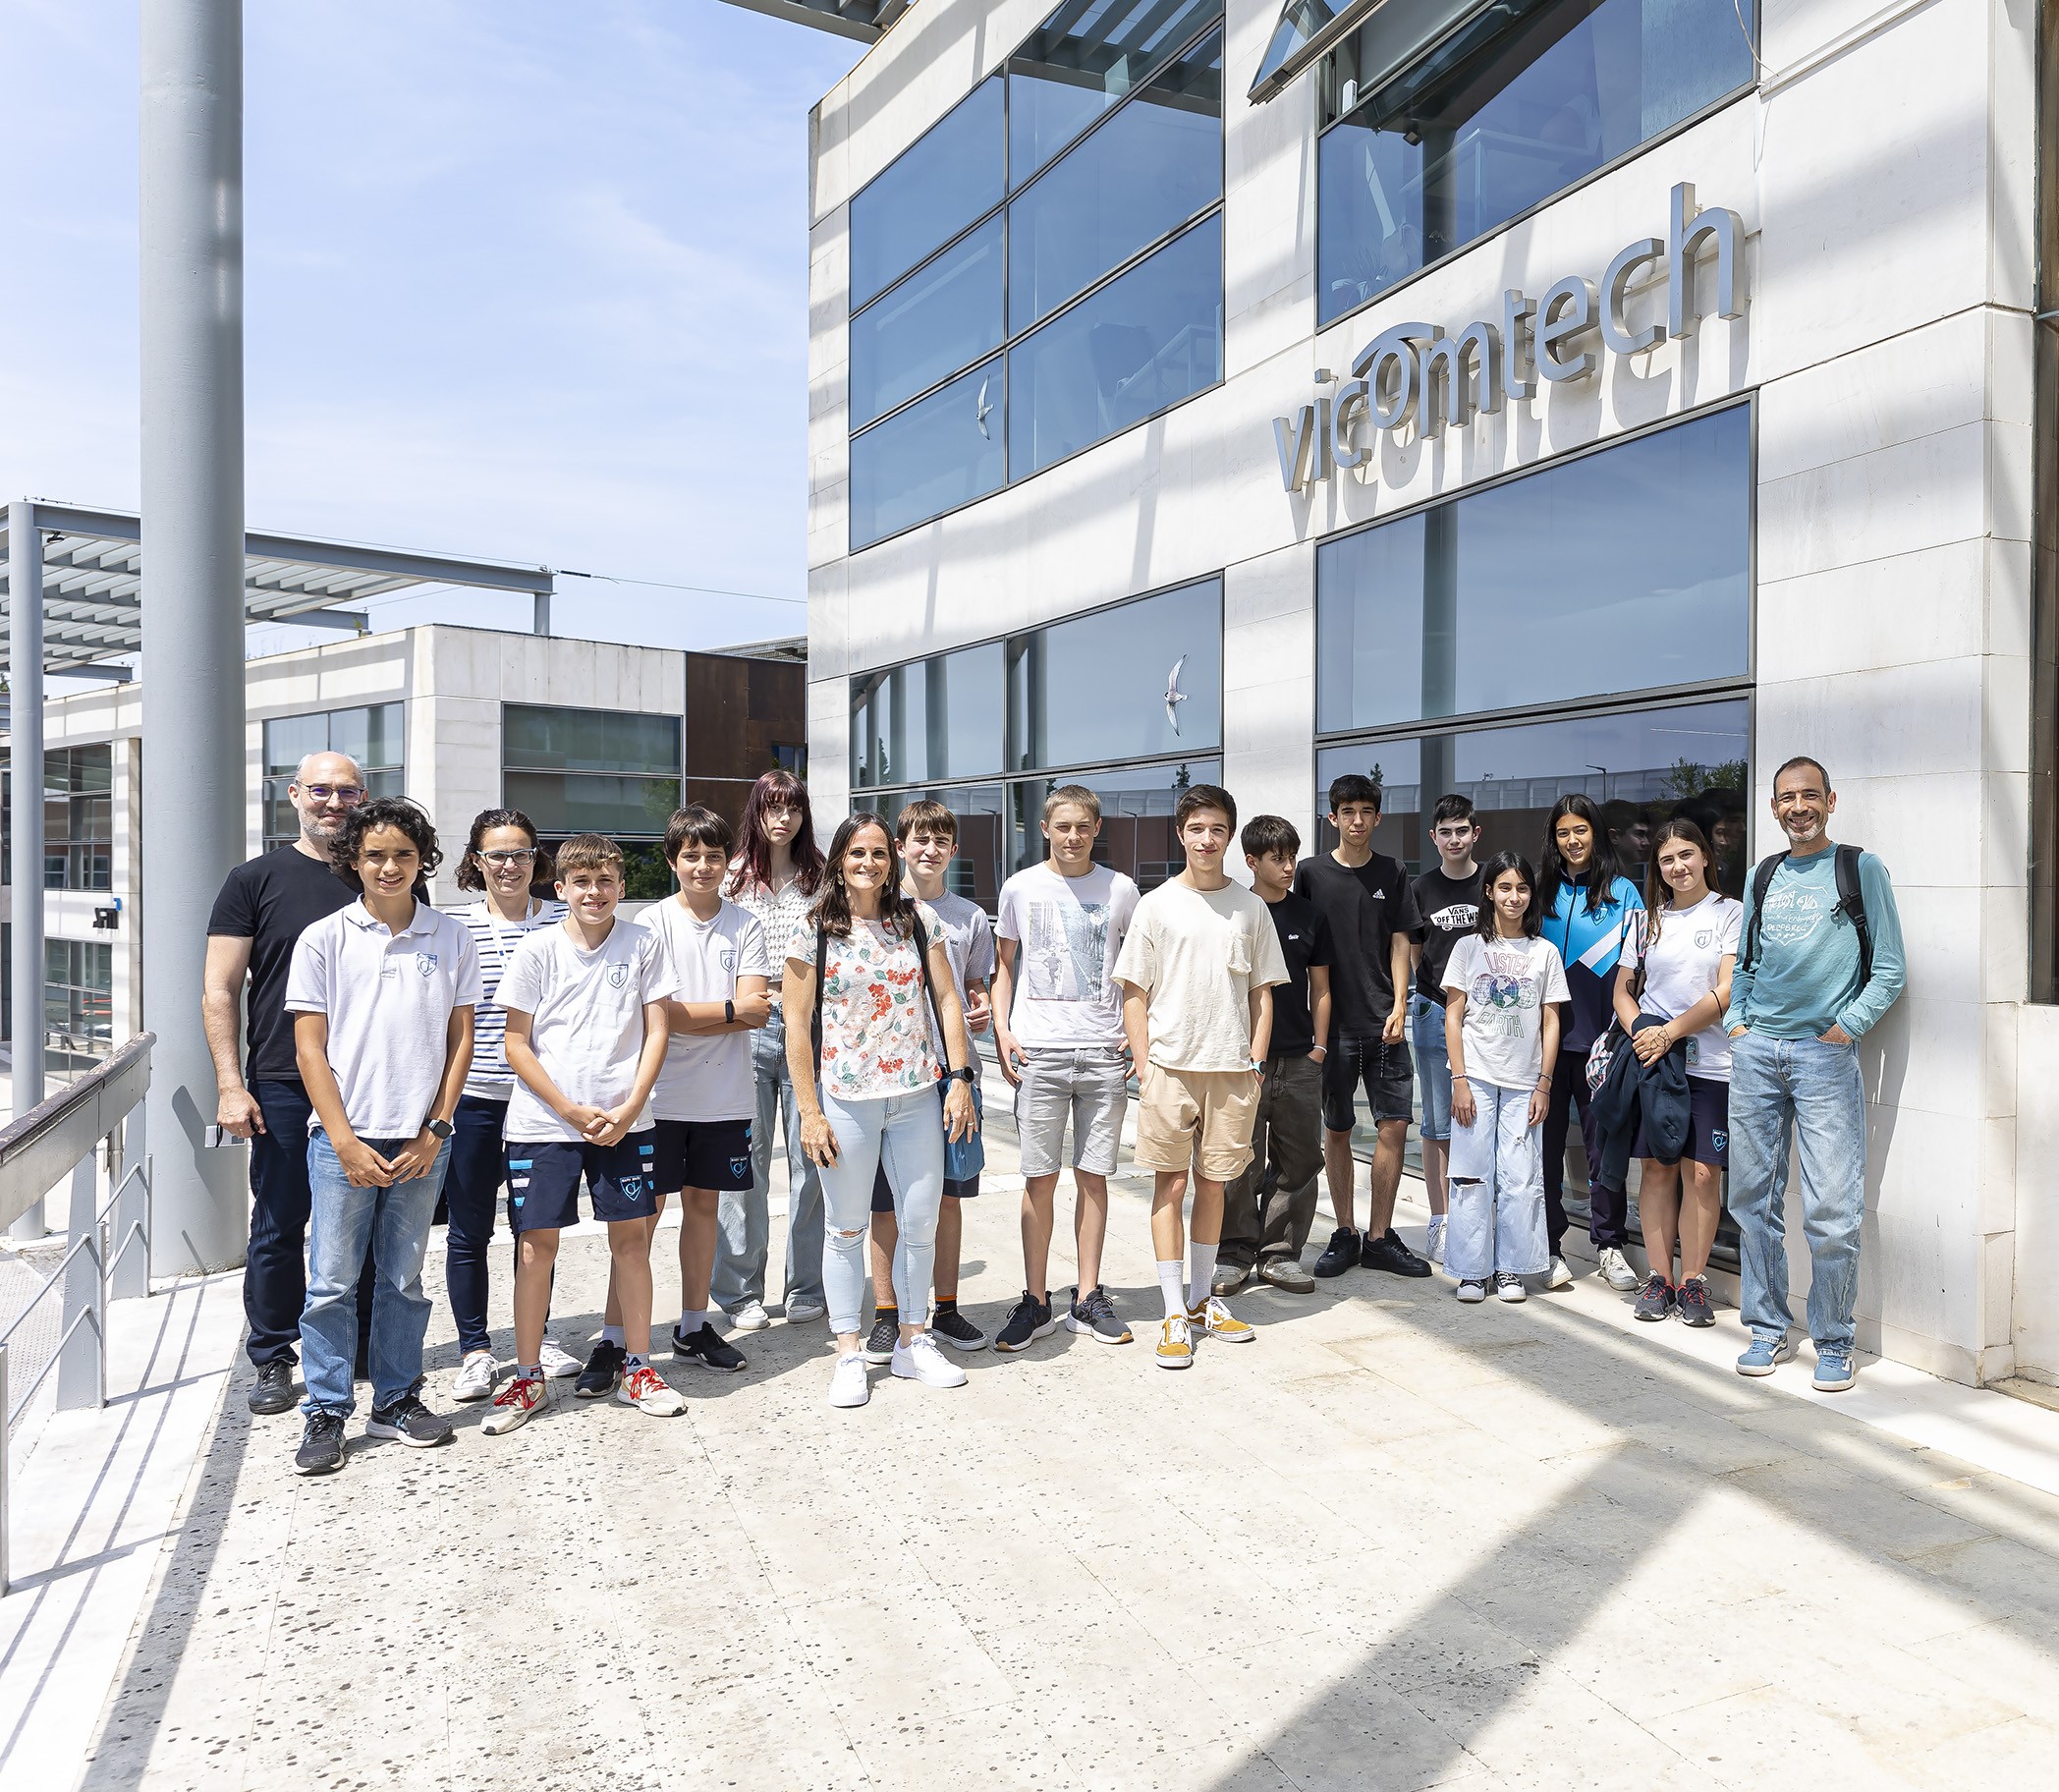 Alumnos y alumnas de edades comprendidas entre los 13 y los 16 años de la Academia Algorithmics Donostia responden al reto de Vicomtech y desarrollan aplicaciones y soluciones de programación en Python 